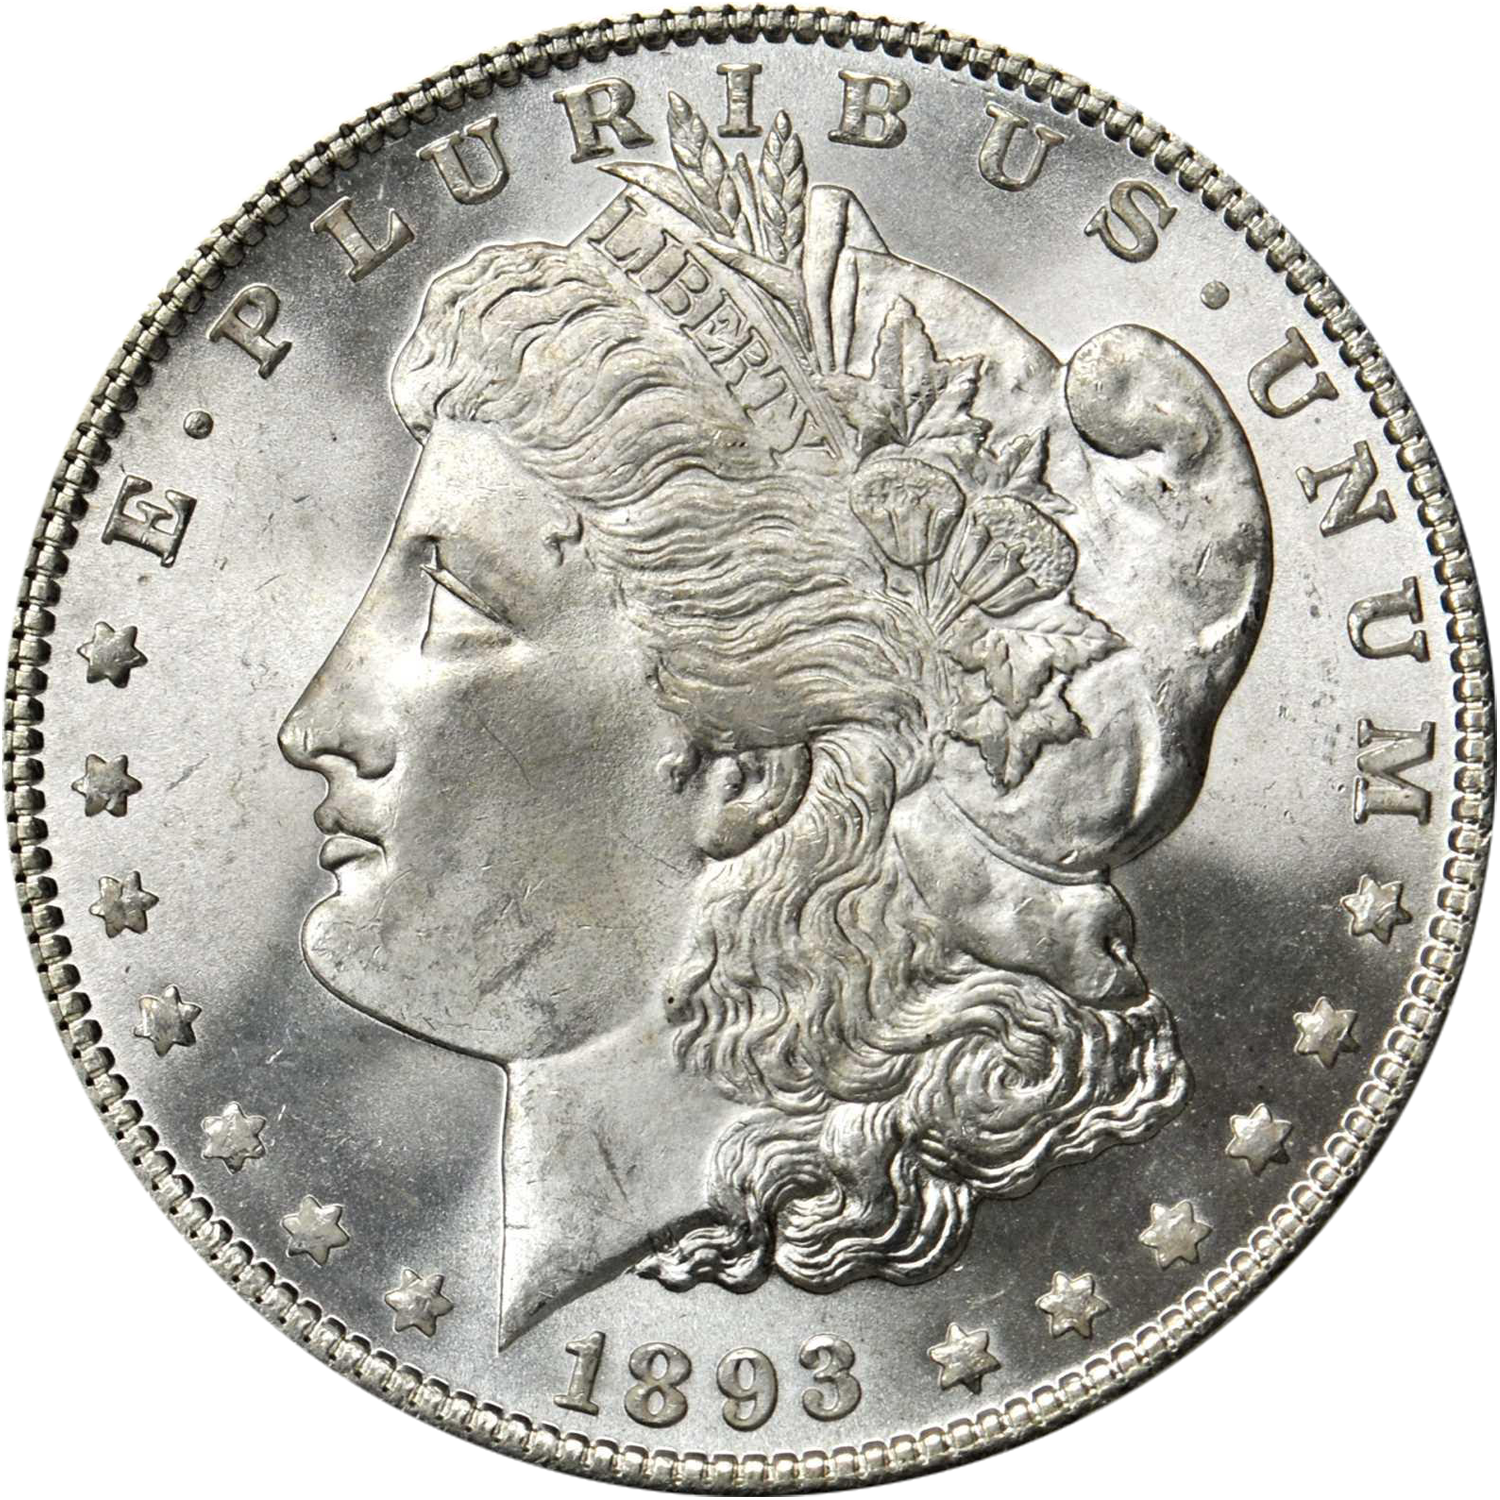 1893 p morgan dollar value guide